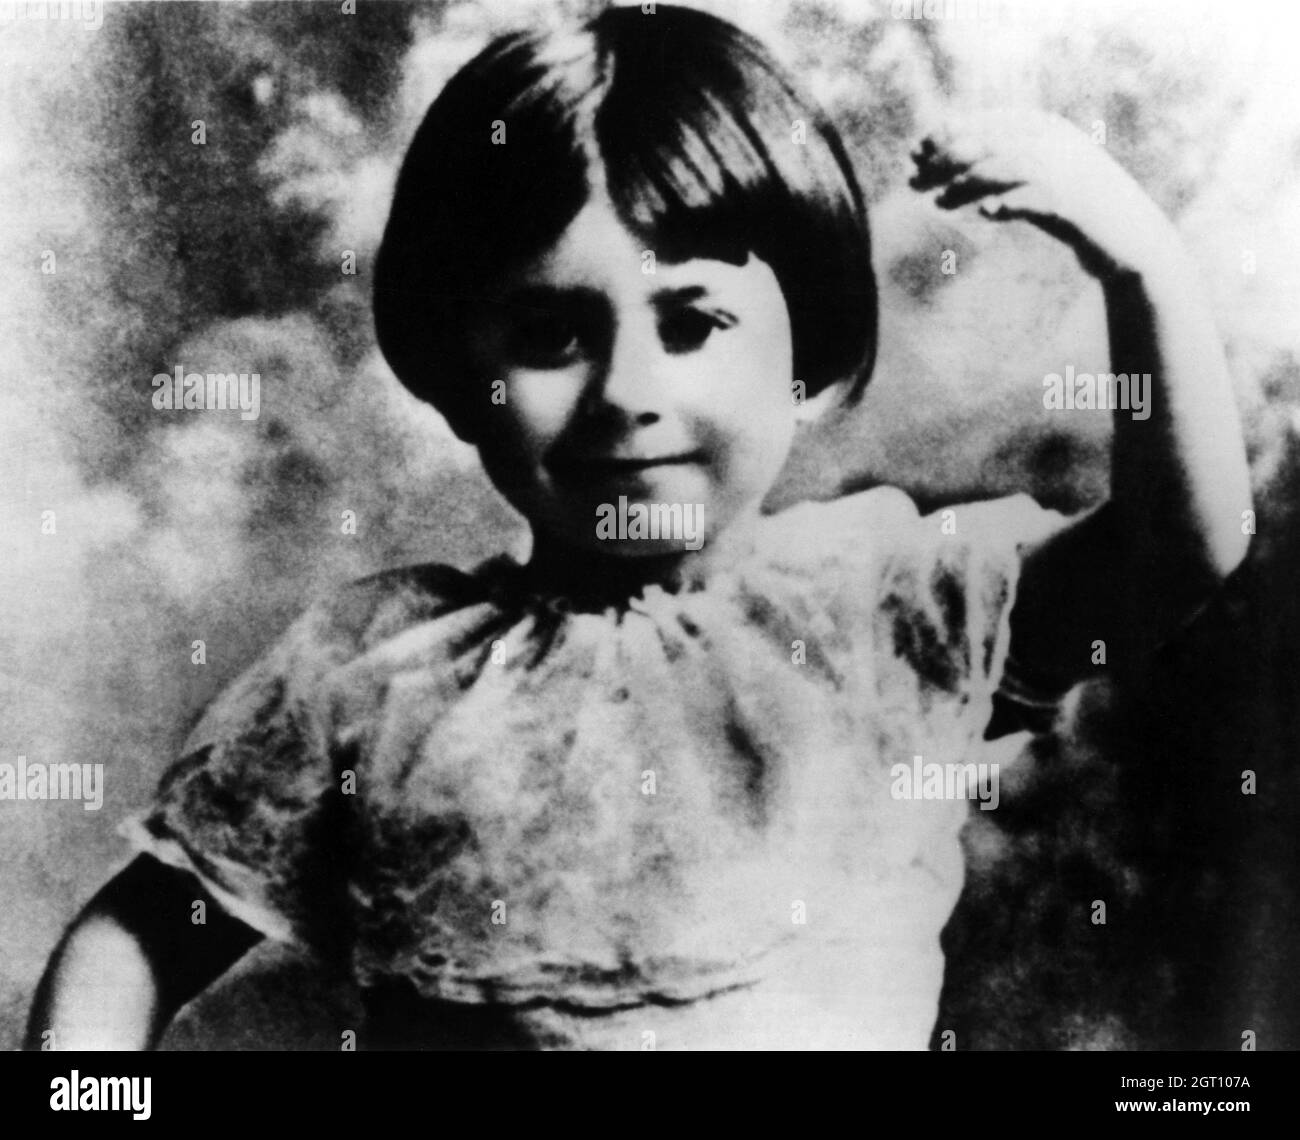 1927 c. , Roma , ITALIE : la célèbre actrice italienne GIULIETTA MASINA ( 1921 - 1994 ) quand était une petite fille , 6 ans . Marié le 30 octobre 1943 avec Federico Fellini, réalisateur. Photographe inconnu .- HISTOIRE - FOTO STORICHE - PORTRAIT - RITRATTO - ATTORE - ATTRICE - FILM - CINÉMA - personalità da giovane giovani - da bambina bambino bambini - personnalités quand était jeune - ENFANCE - INFANZIA - ENFANT - ENFANTS -- ARCHIVIO GBB Banque D'Images